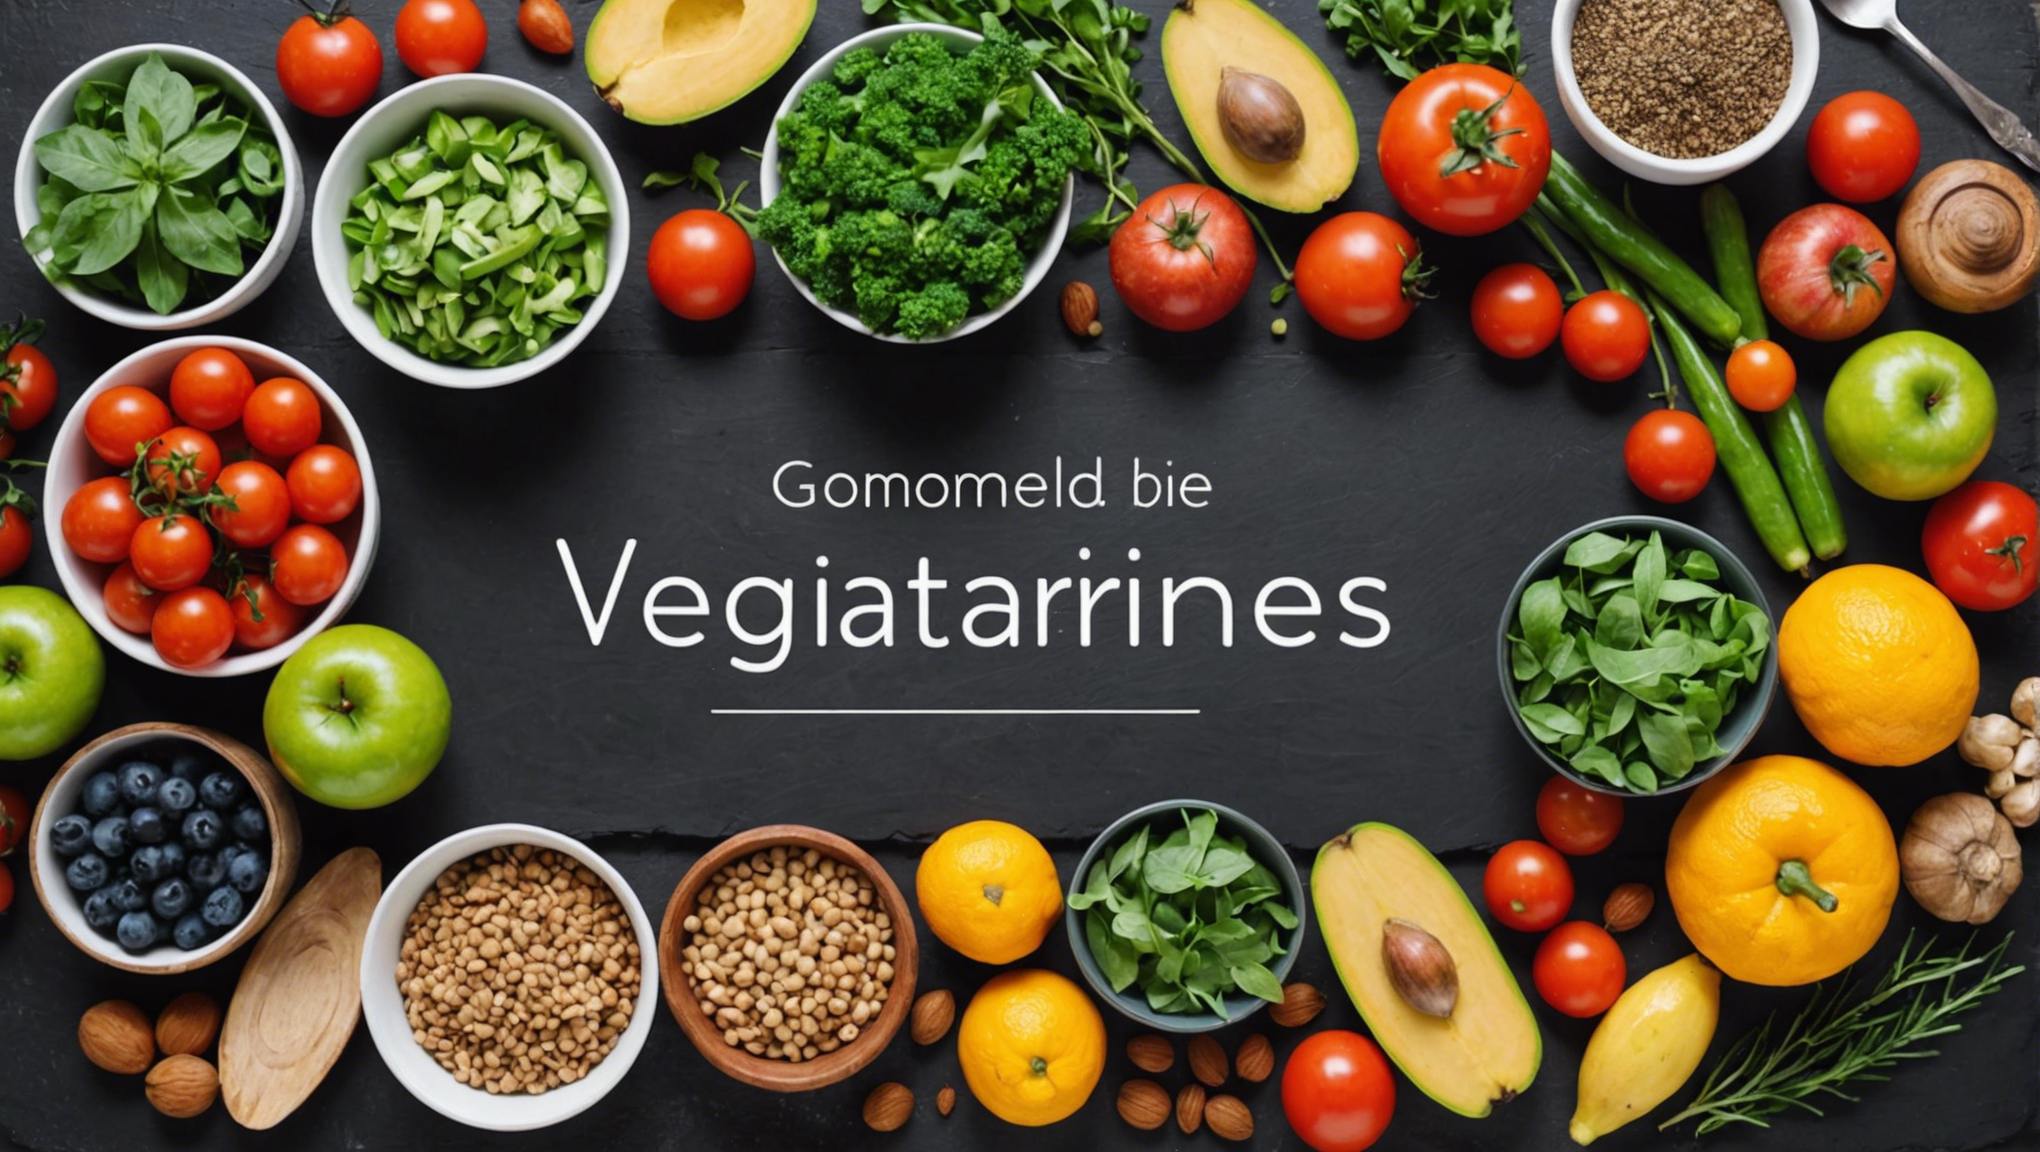 découvrez les avantages pour la santé des aliments végétariens et comment ils peuvent contribuer à votre bien-être.